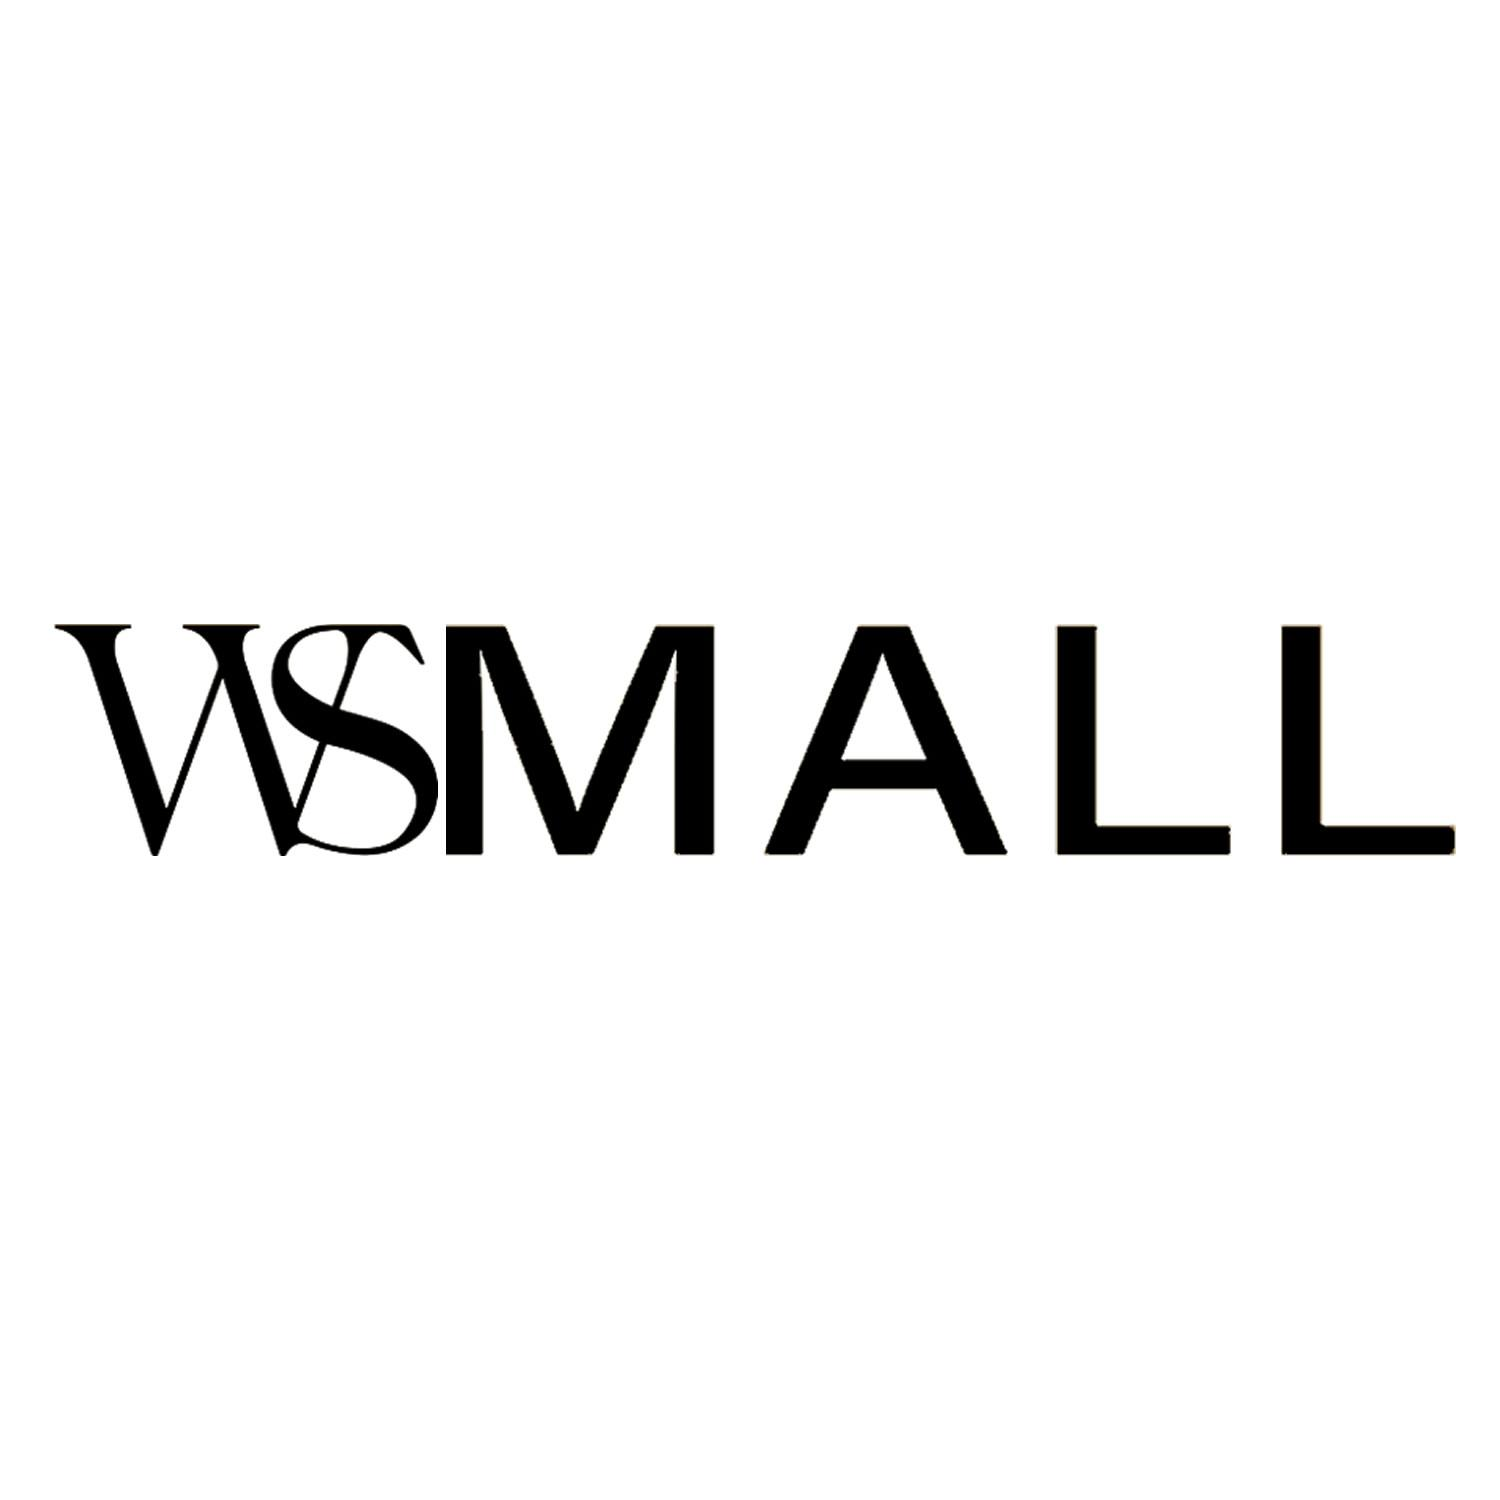 商标文字wsmall商标注册号 56644808,商标申请人武汉武商集团股份有限